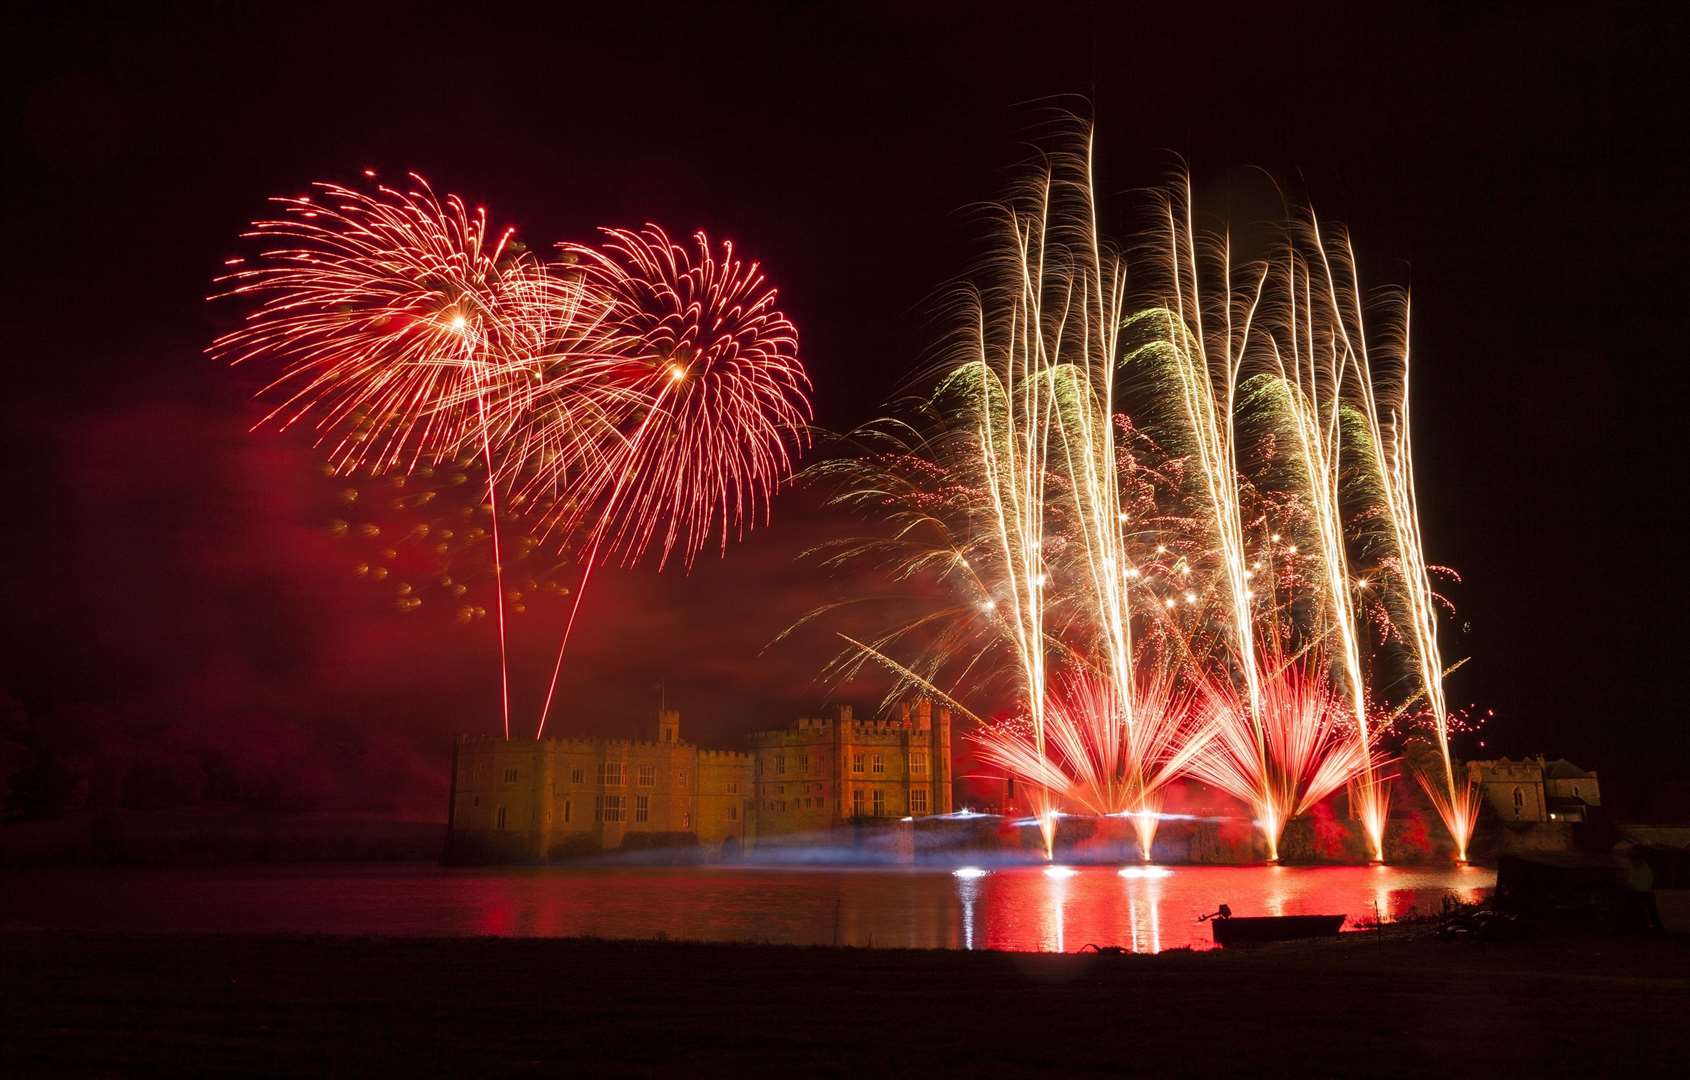 Leeds Castle fireworks